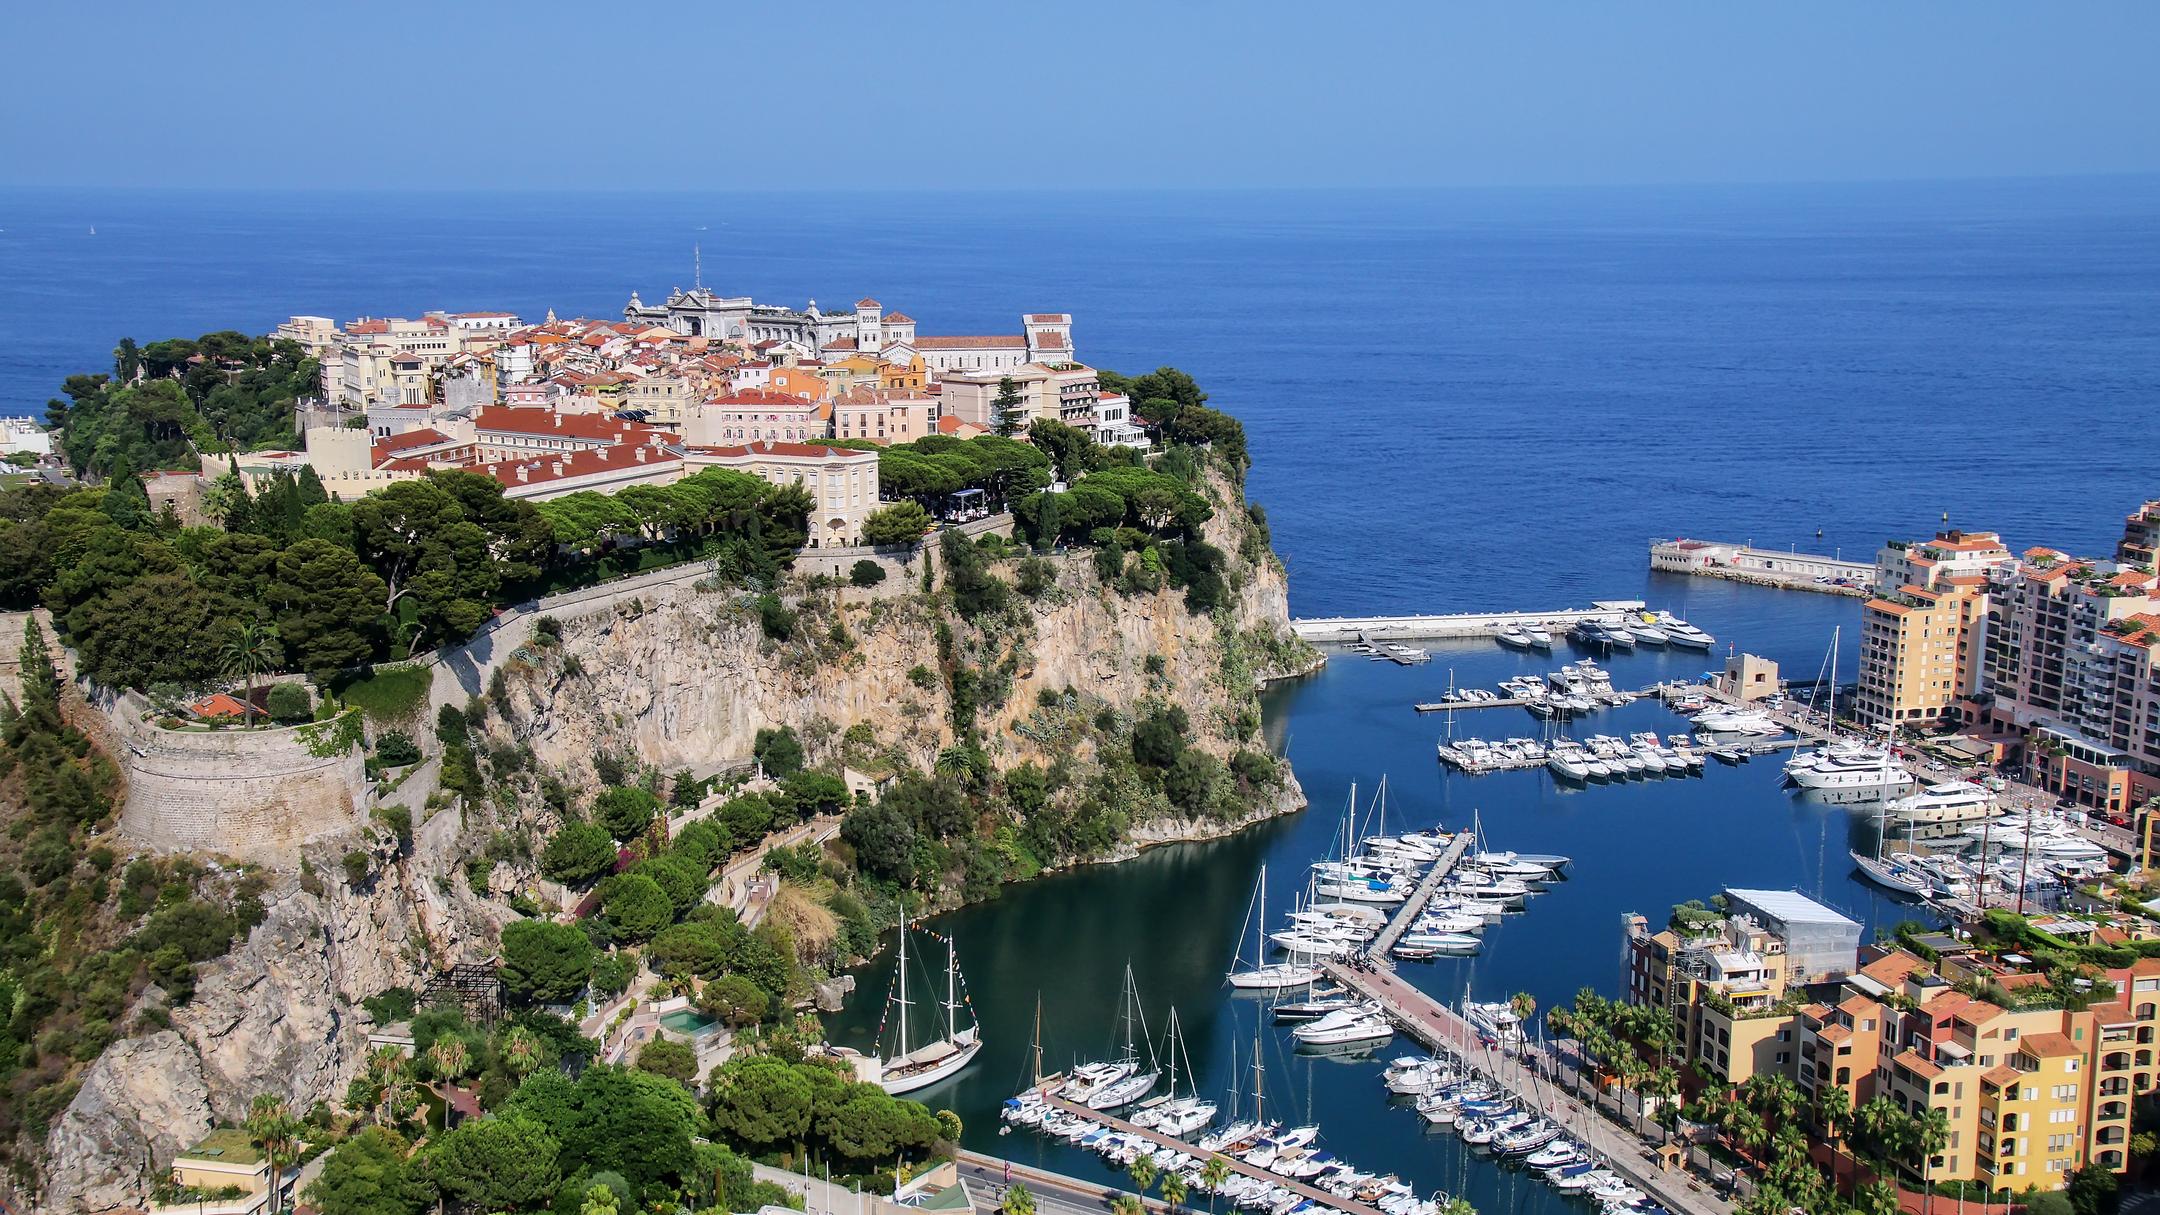 8 Best Hotels in Monaco. Hotels from $164/night - KAYAK